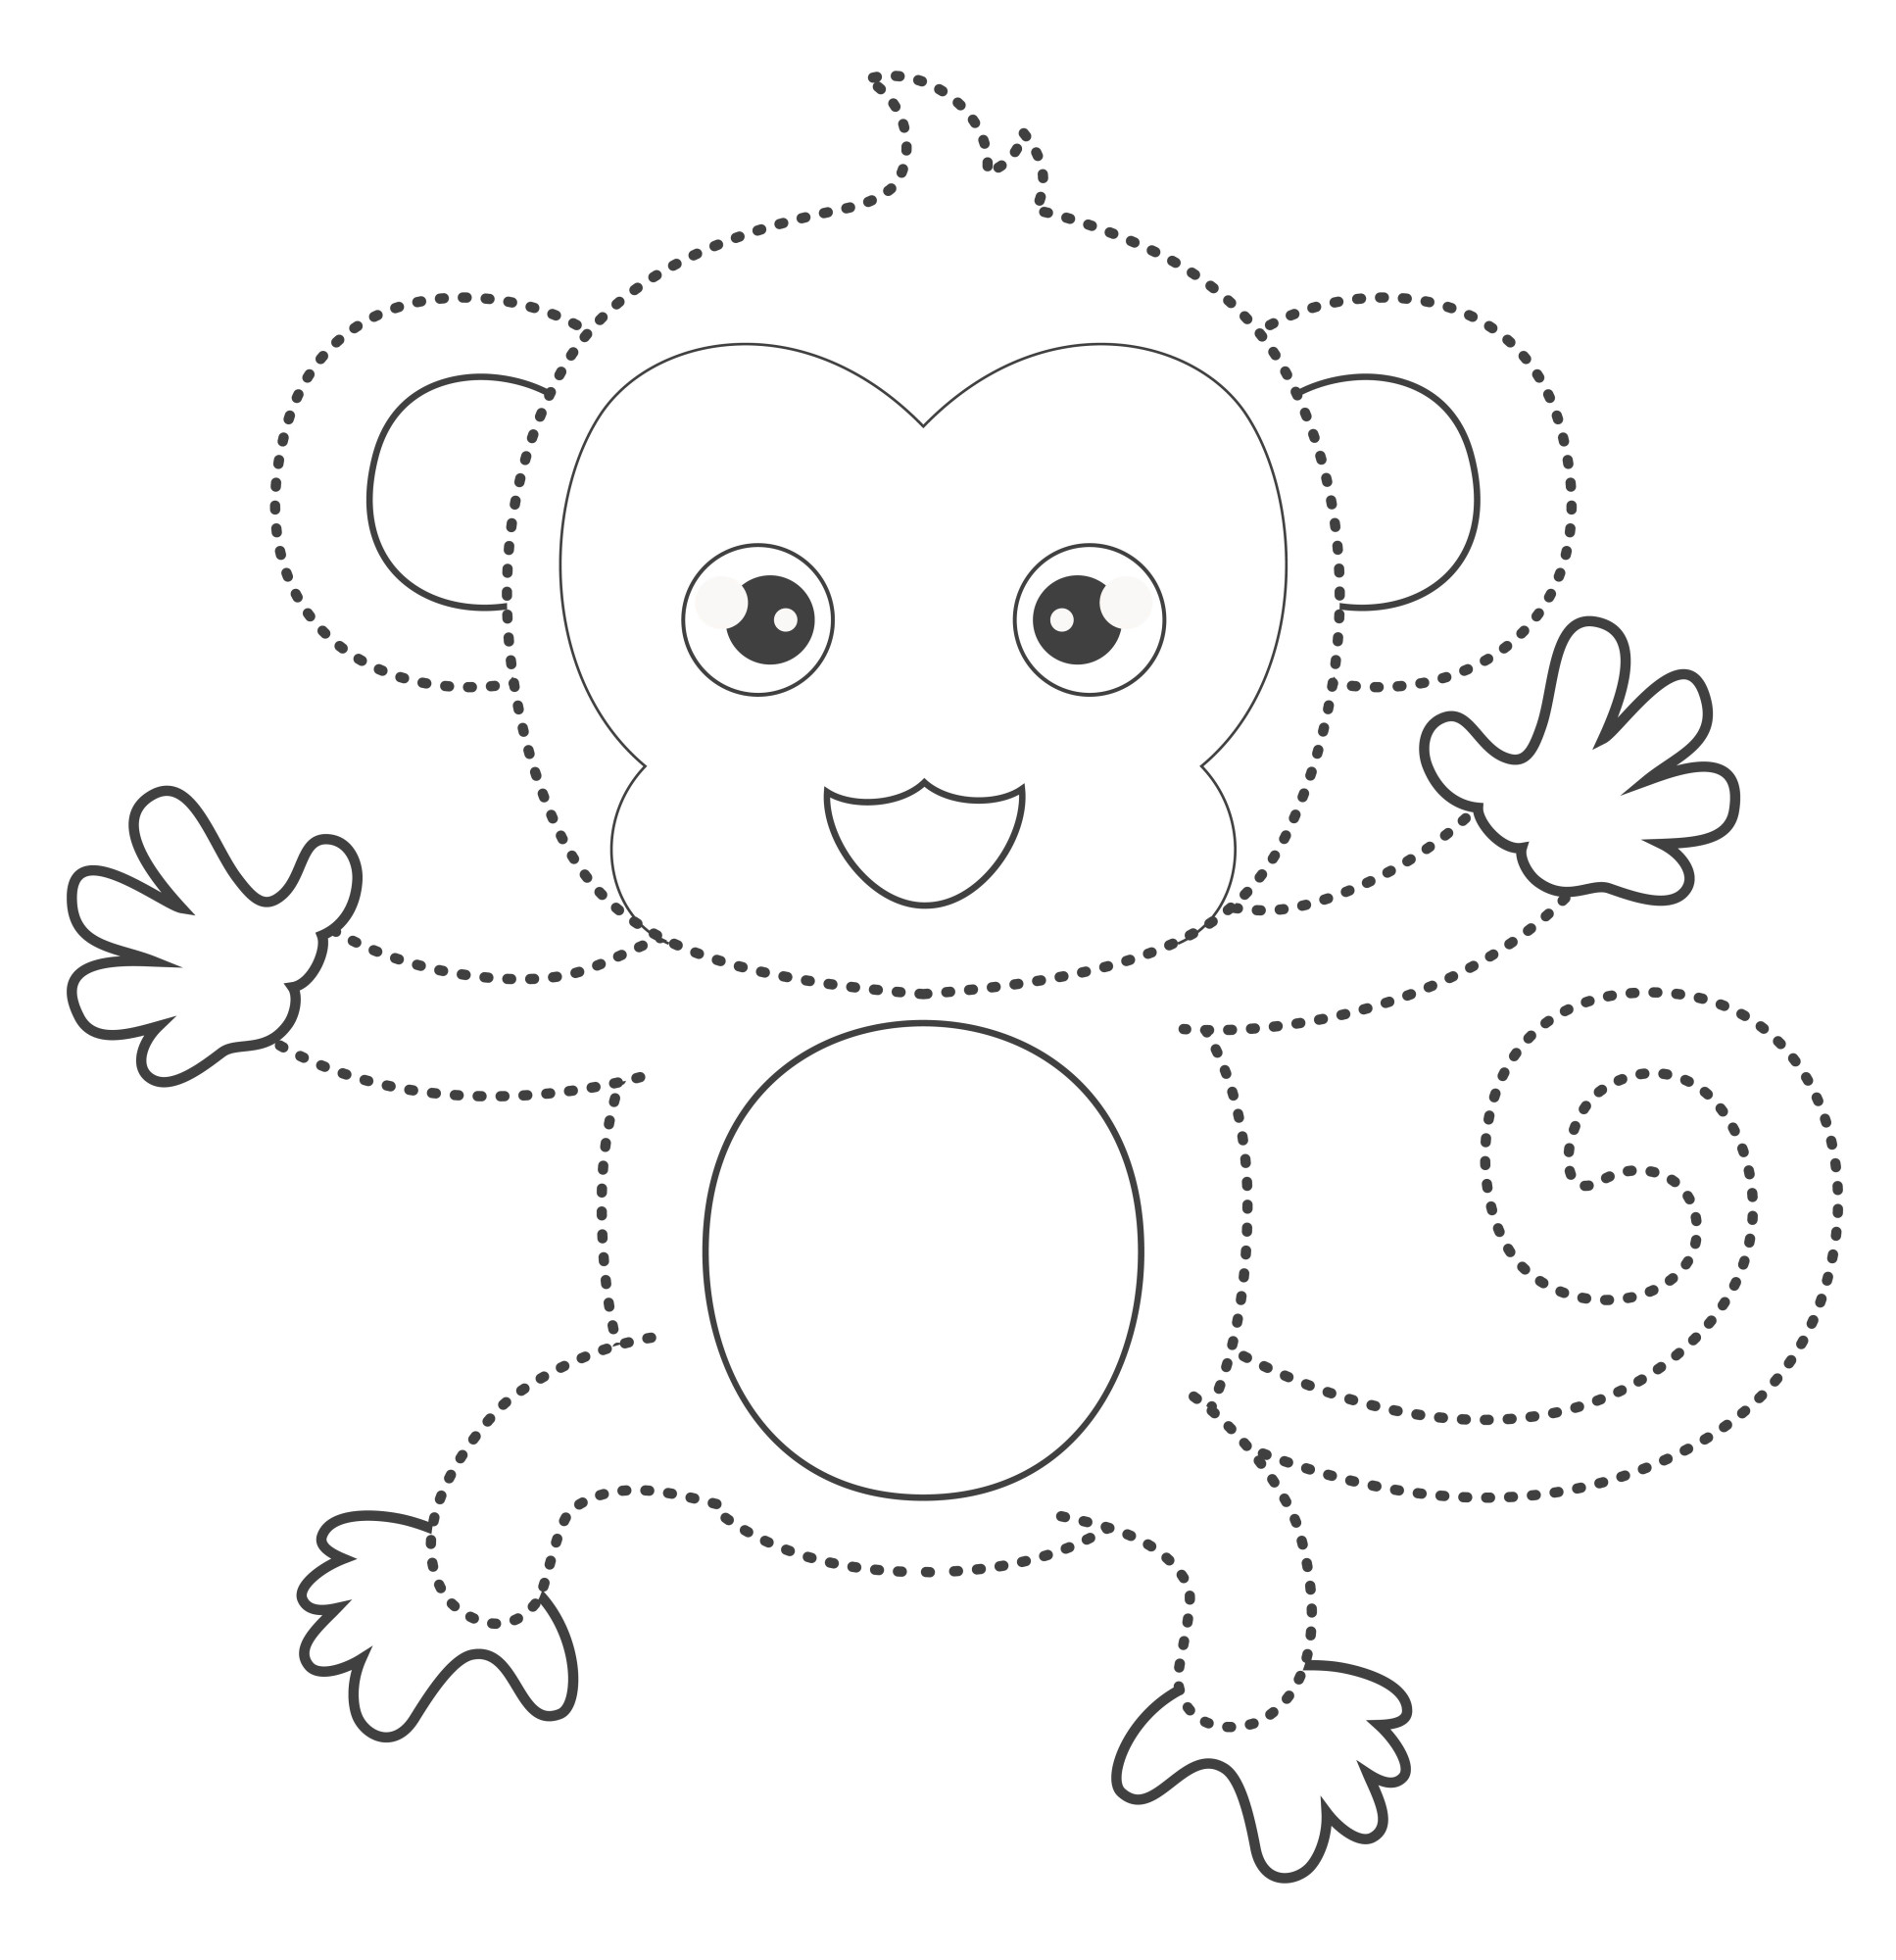 Раскраска для детей: по точкам забавная маленькая обезьянка танцует